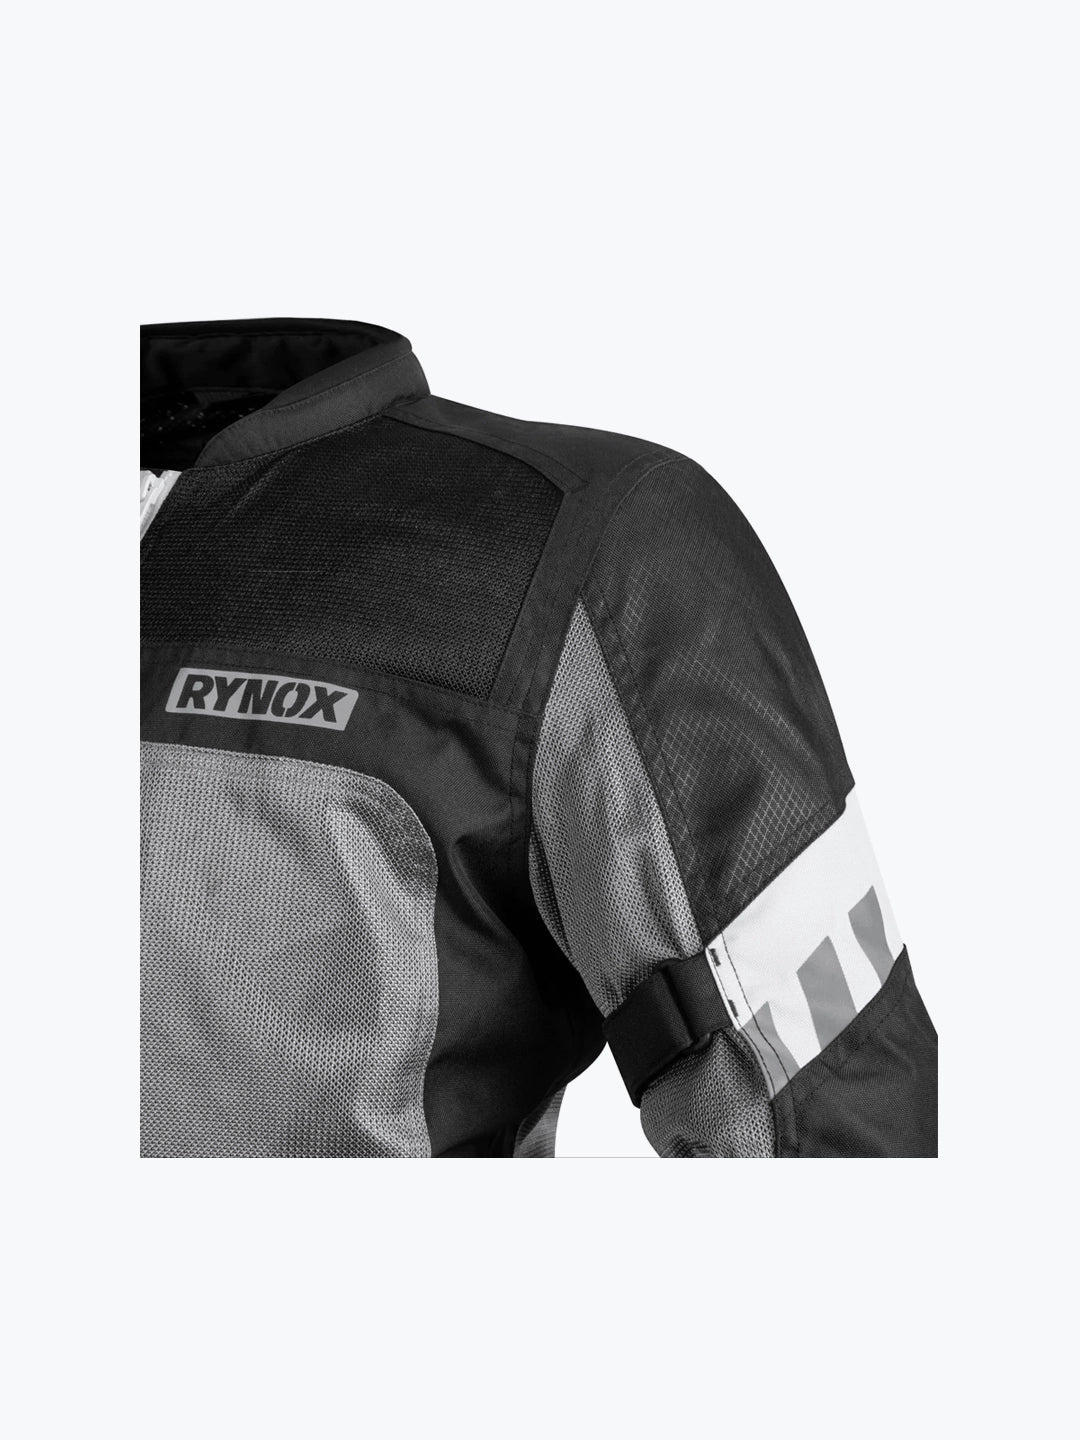 Rynox Helium GT 2 Jacket